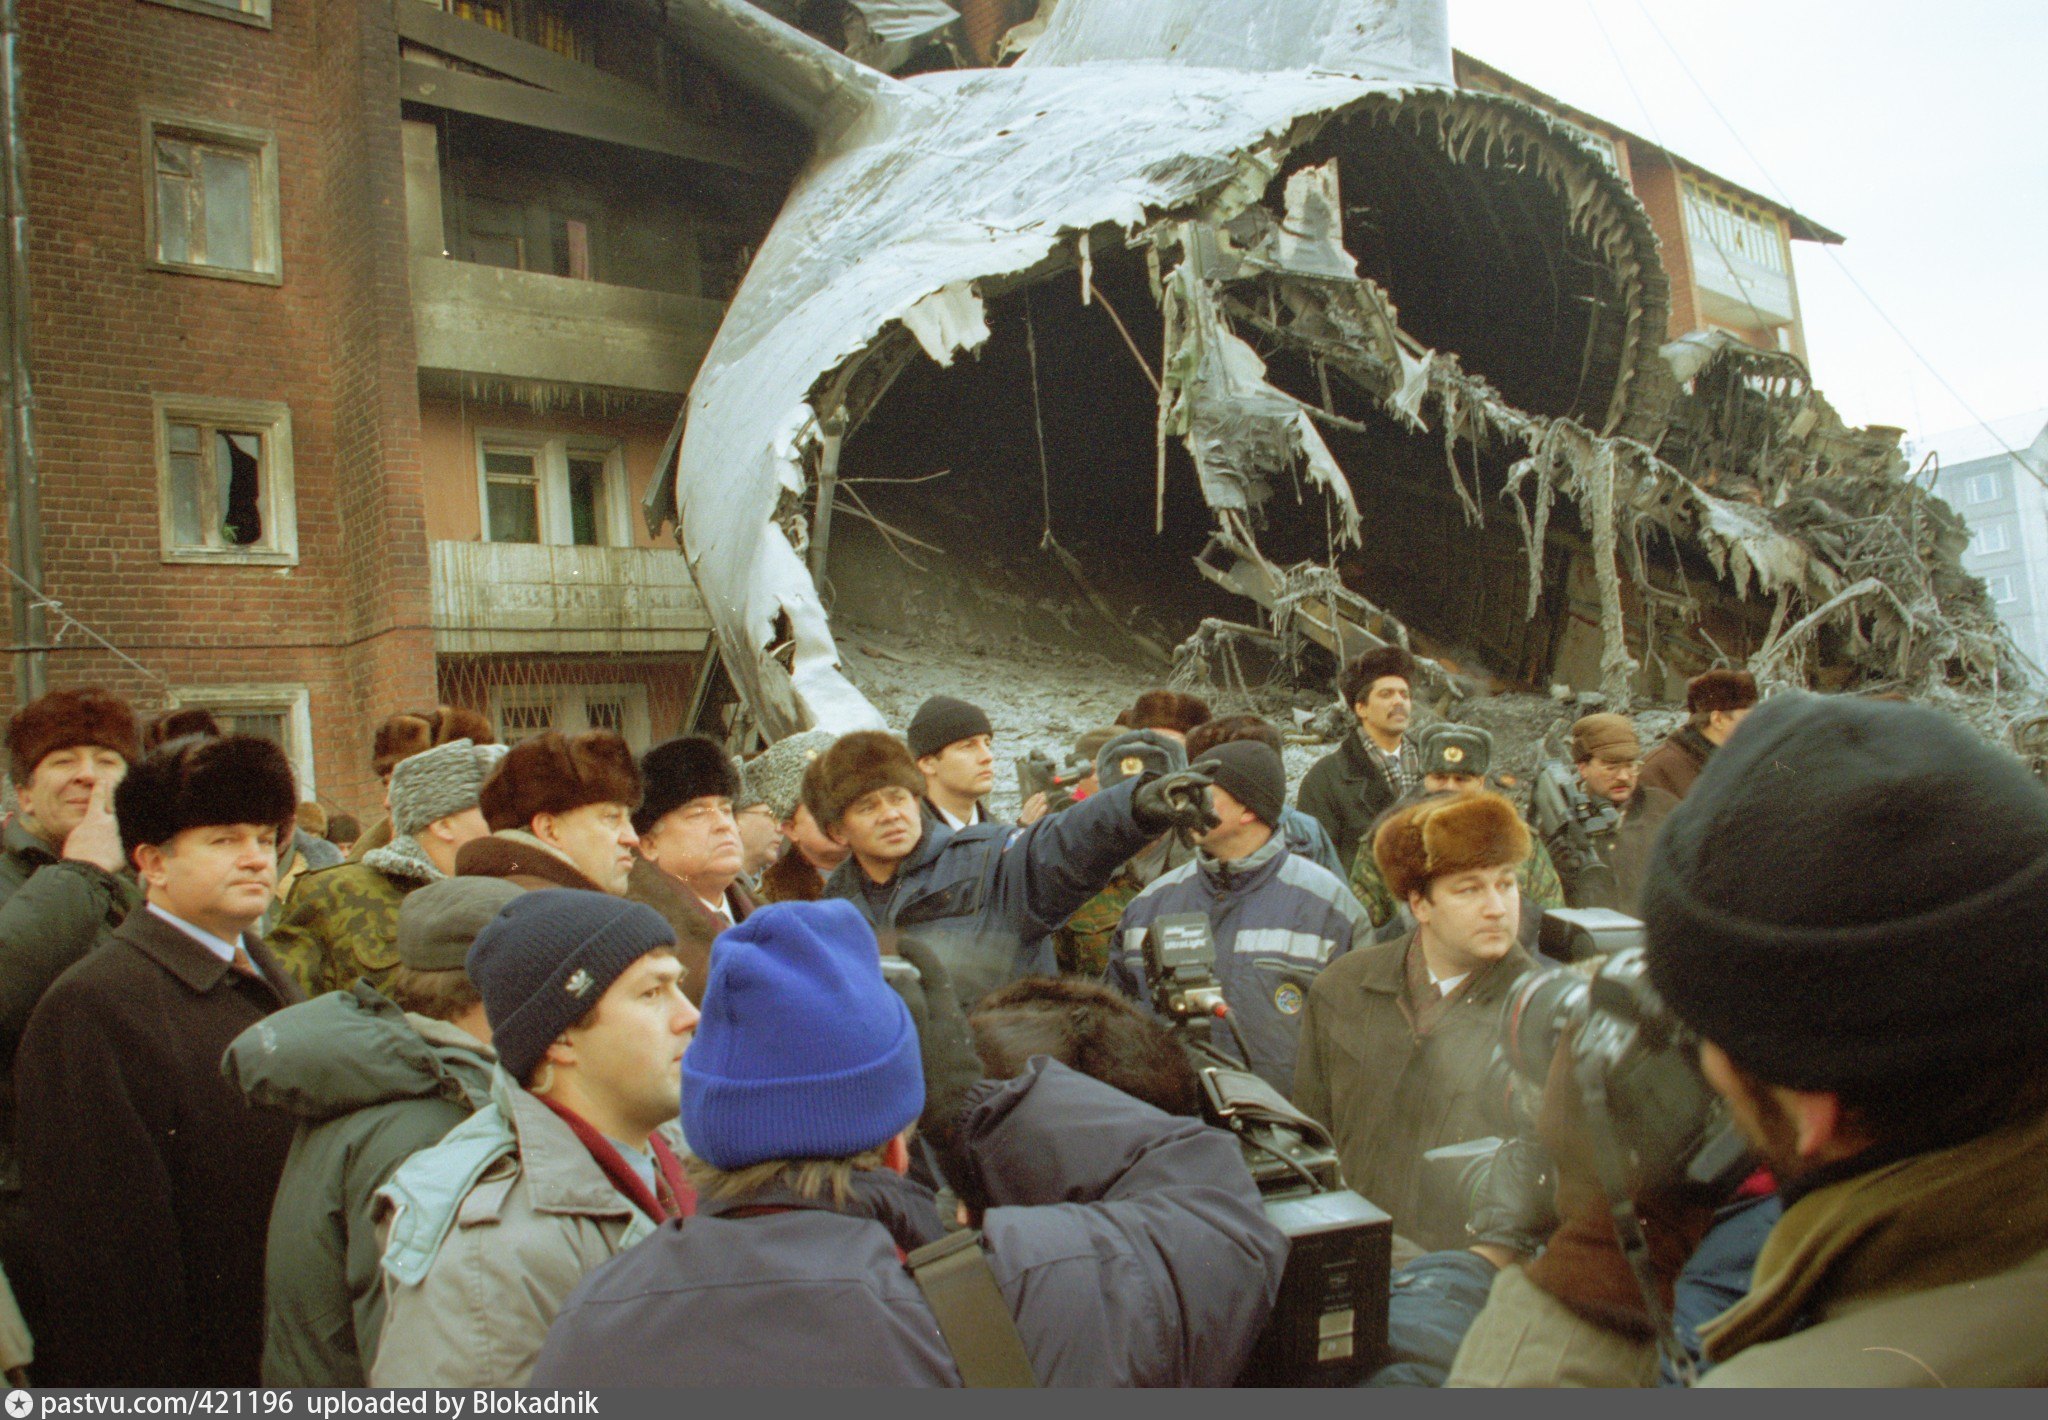 Рубеж 90 годов. Катастрофа АН-124 В Иркутске. 6 Декабря 1997 авиакатастрофа АН-124 В Иркутске.